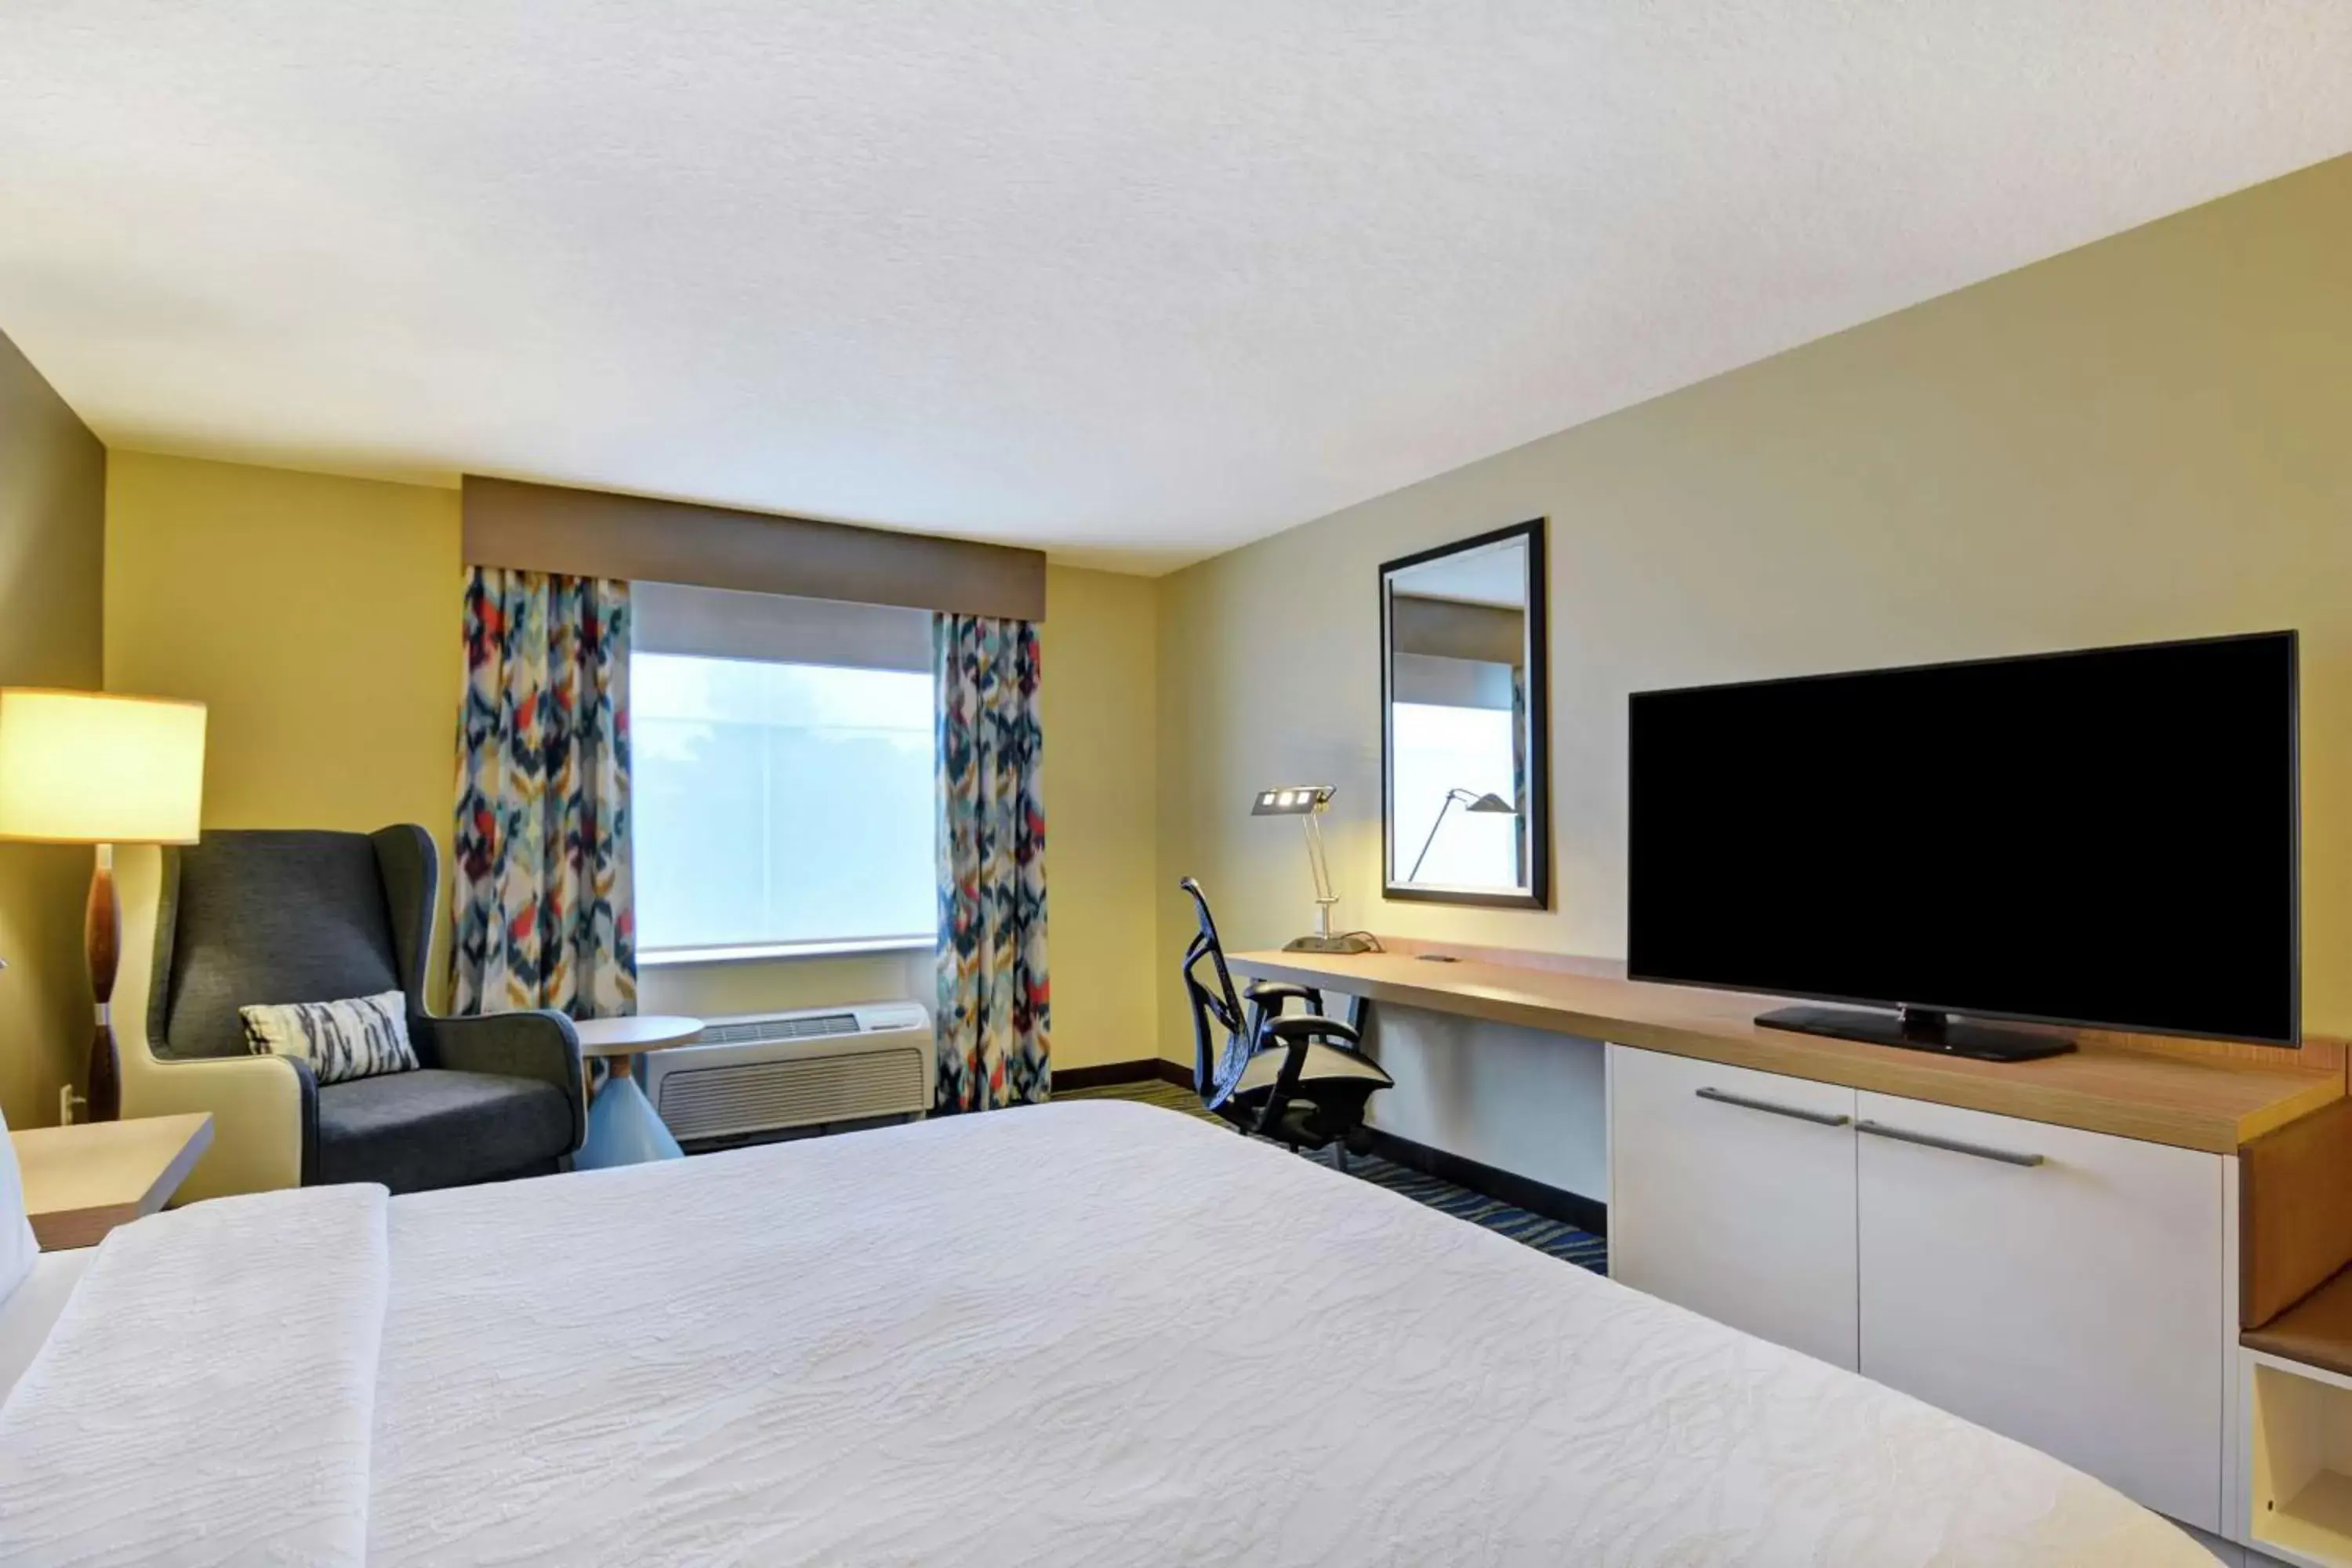 Bedroom, TV/Entertainment Center in Hilton Garden Inn Orlando Lake Buena Vista